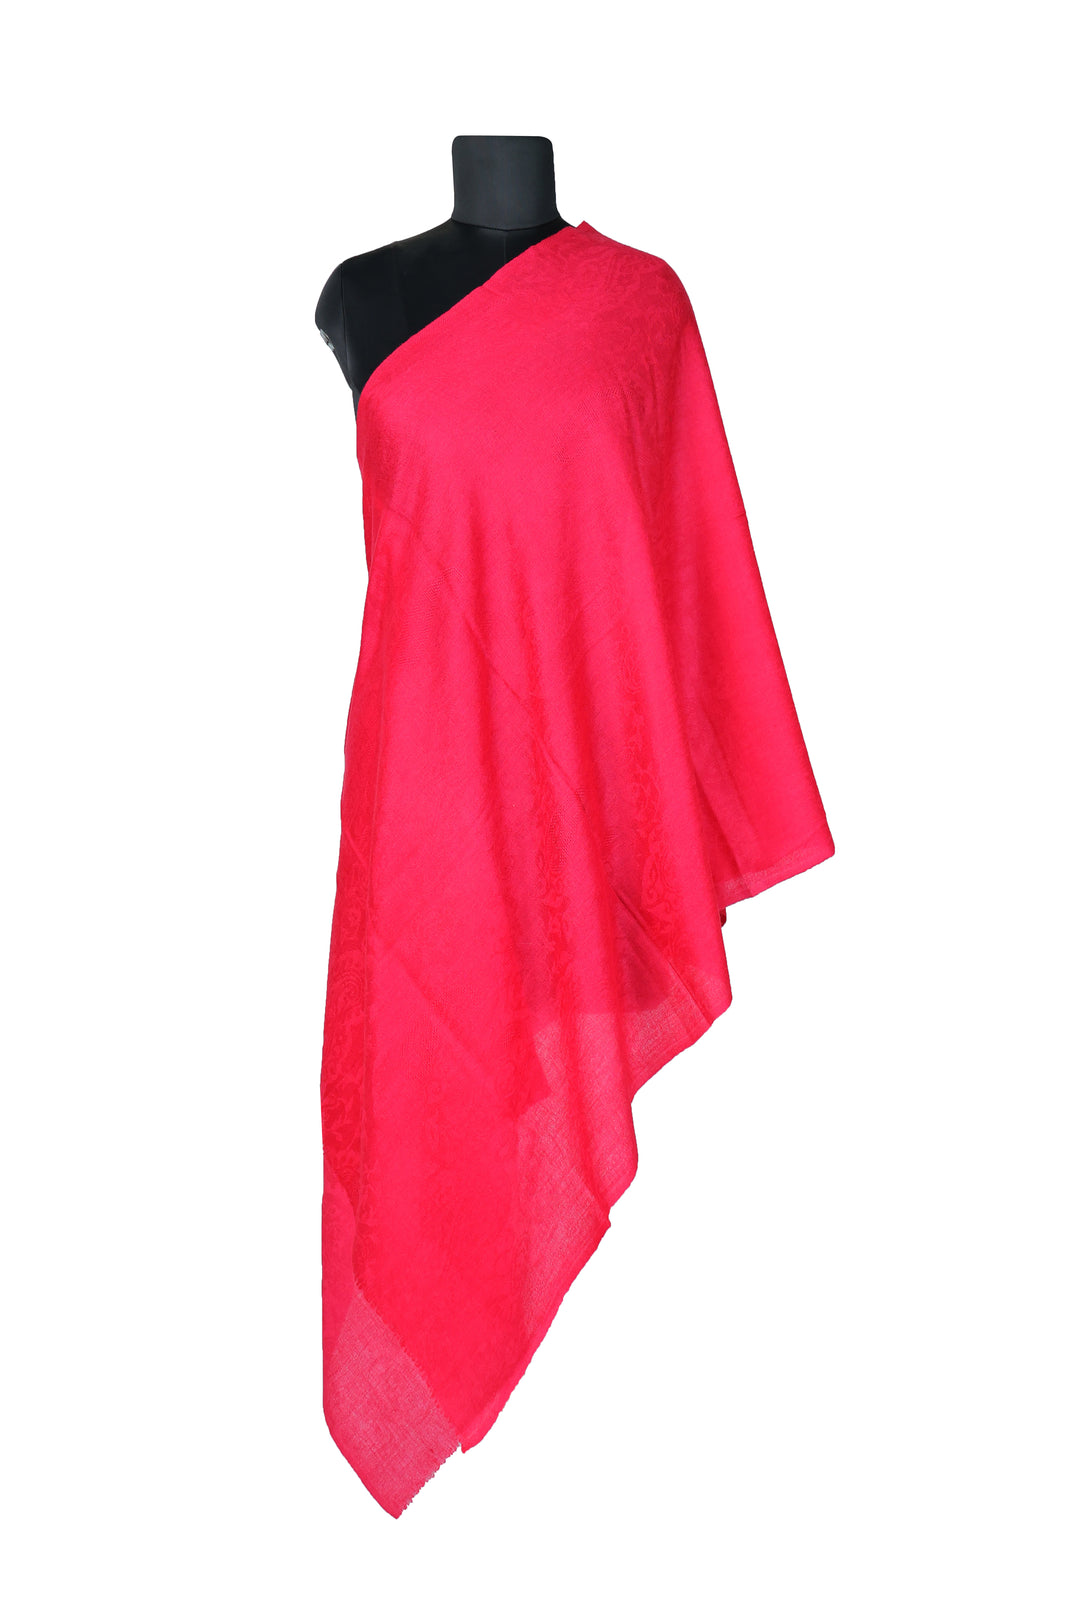 Pashmina Elegance: Luxurious Pink Wool Shawl